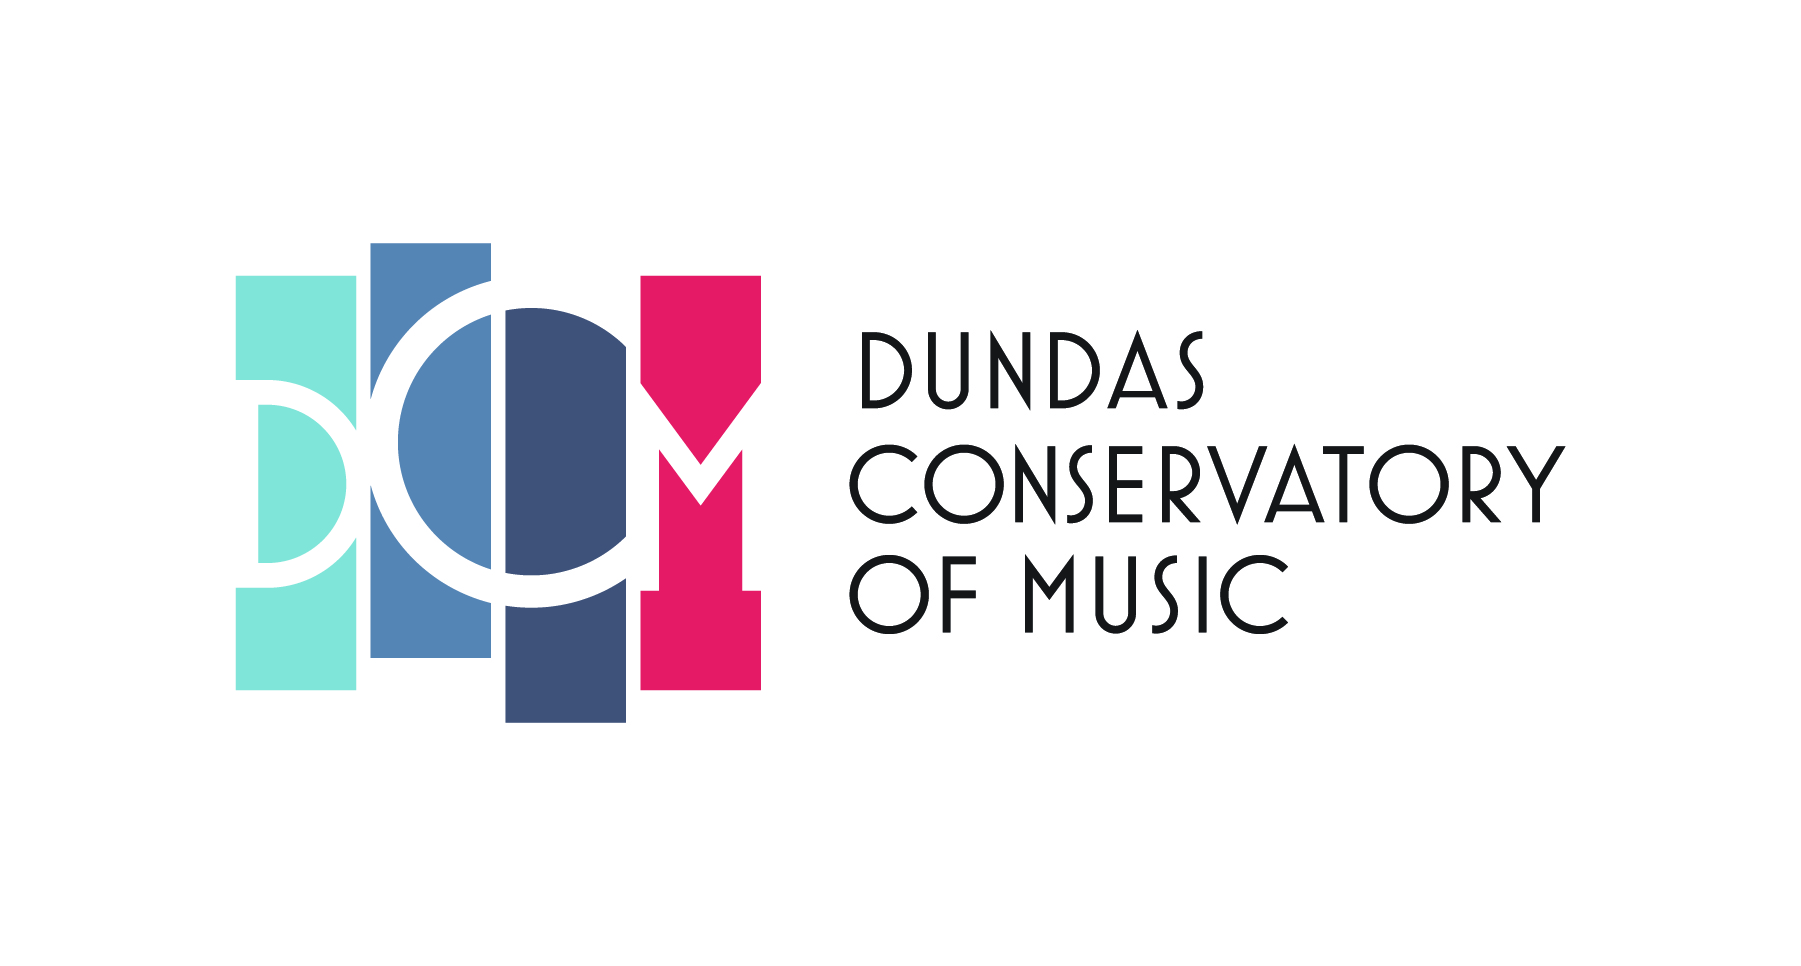 Dundas Conservatory of Music